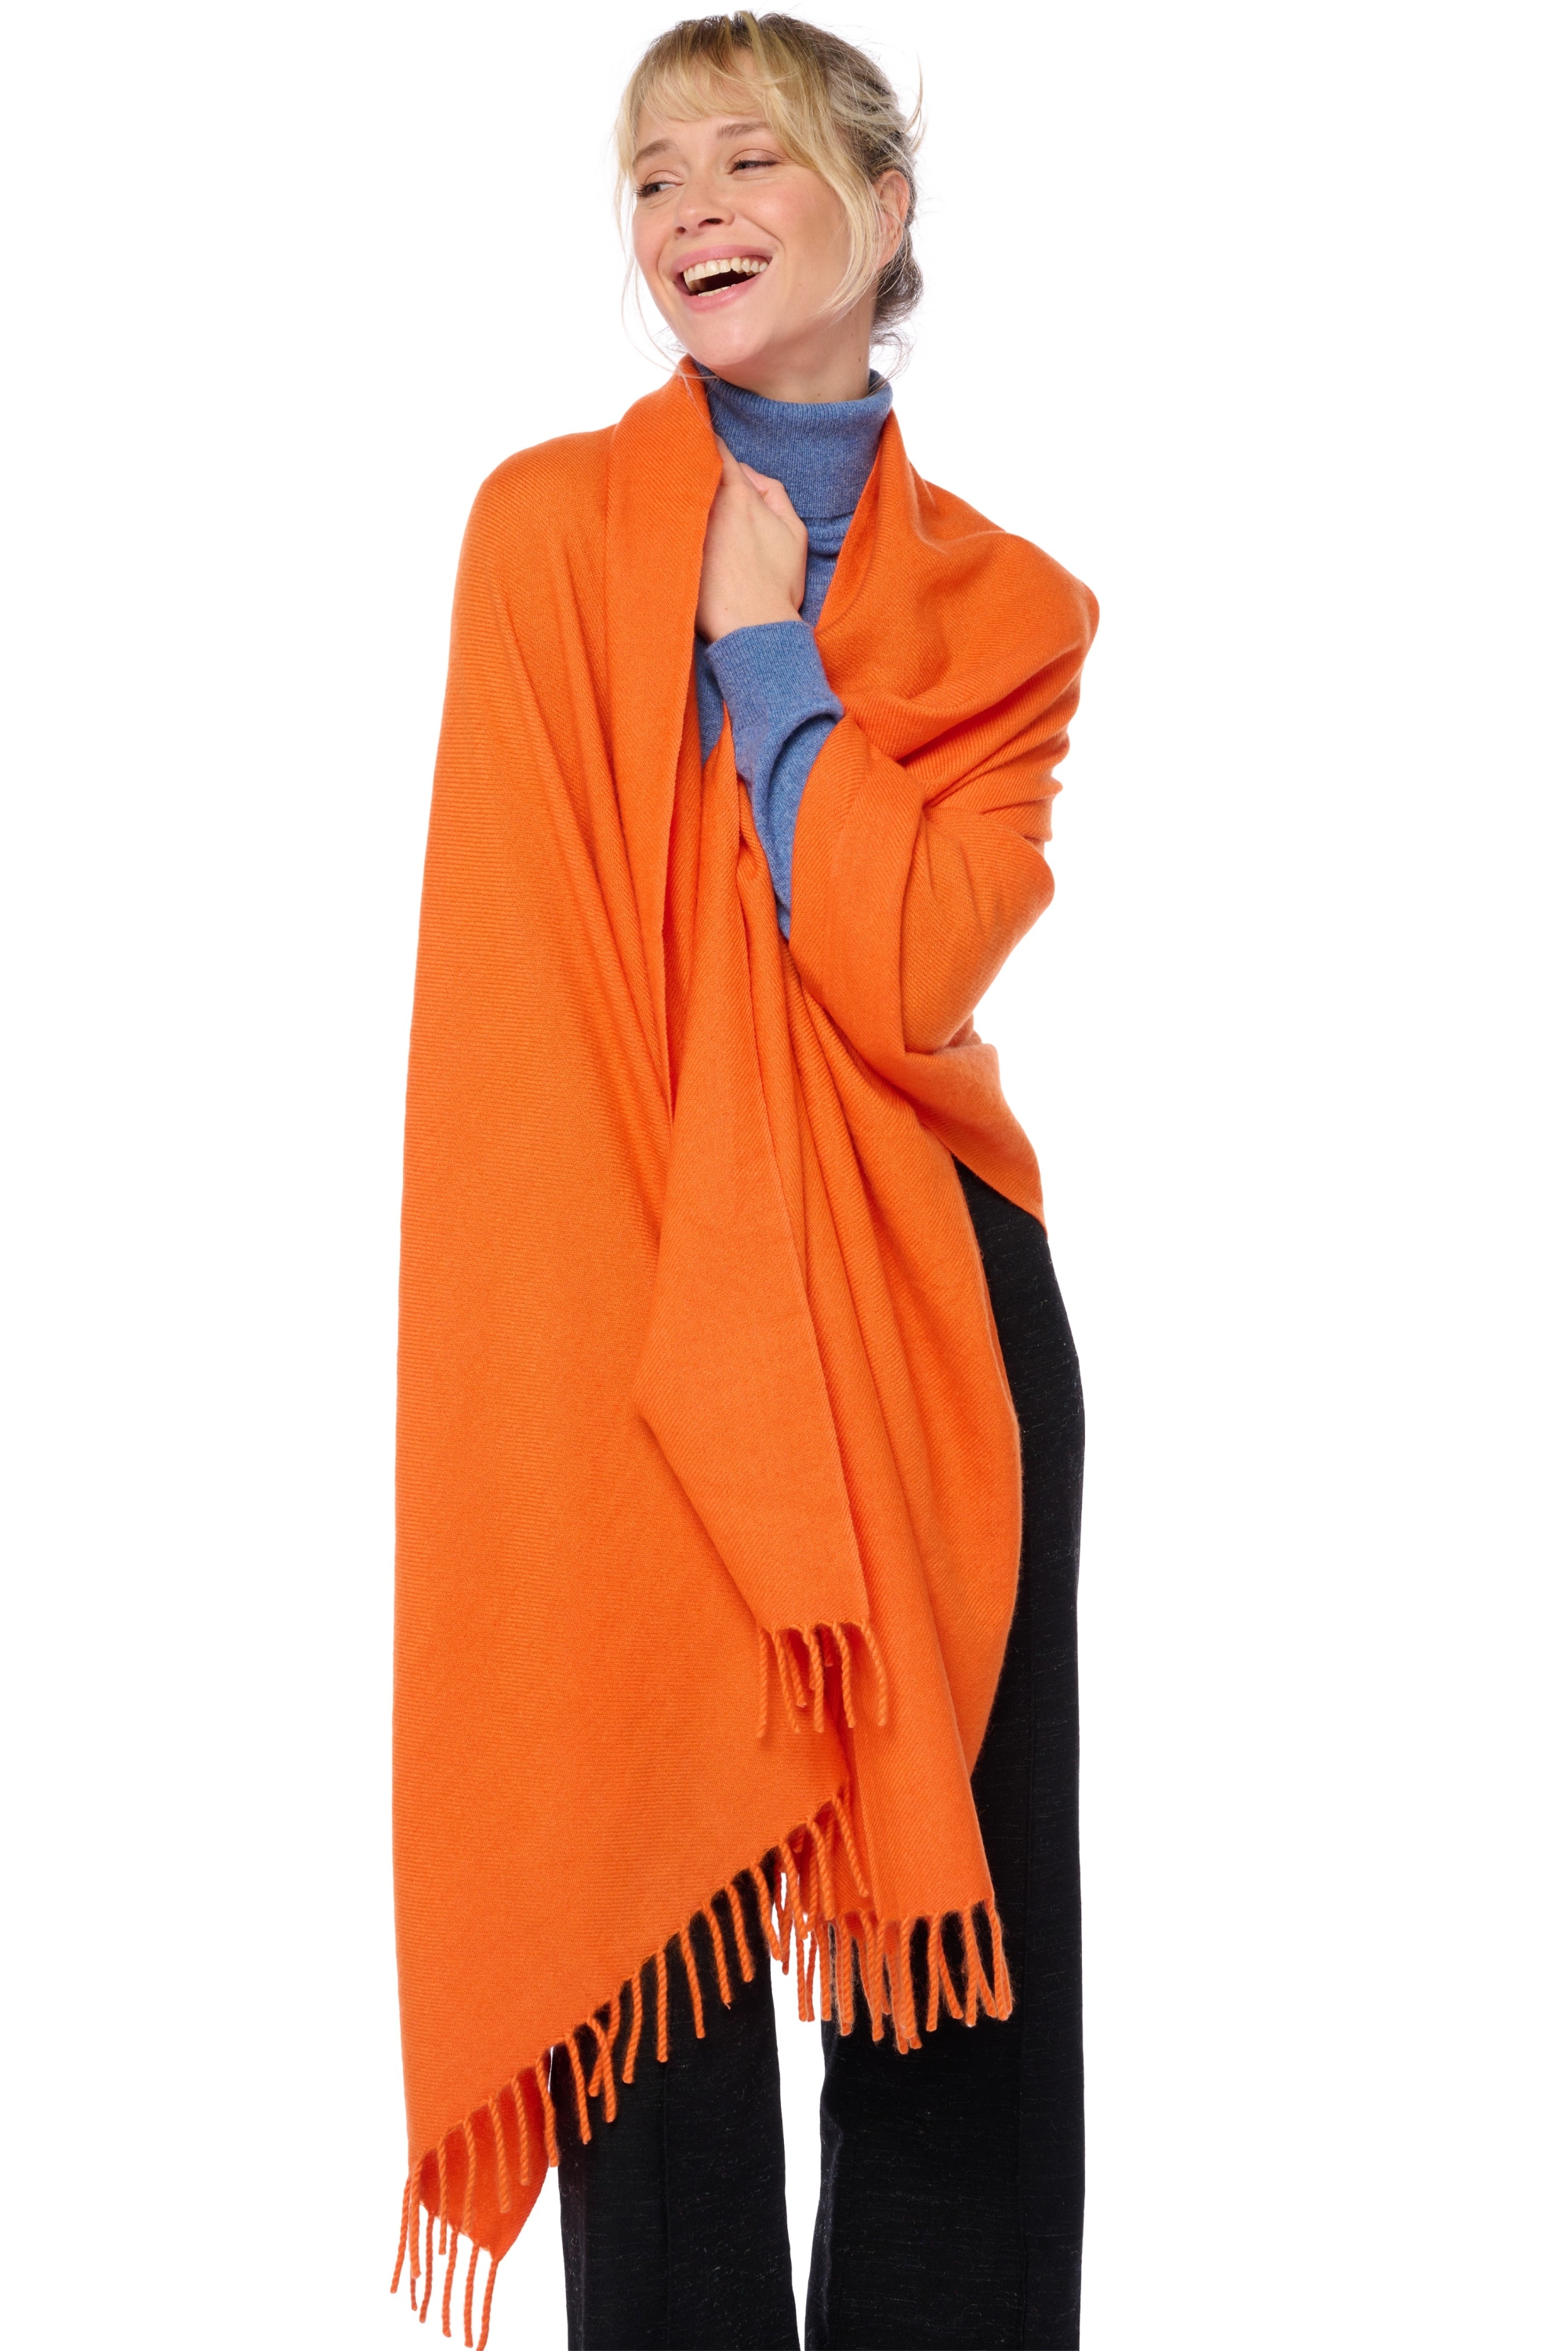 Cashmere accessori niry arancio 200x90cm